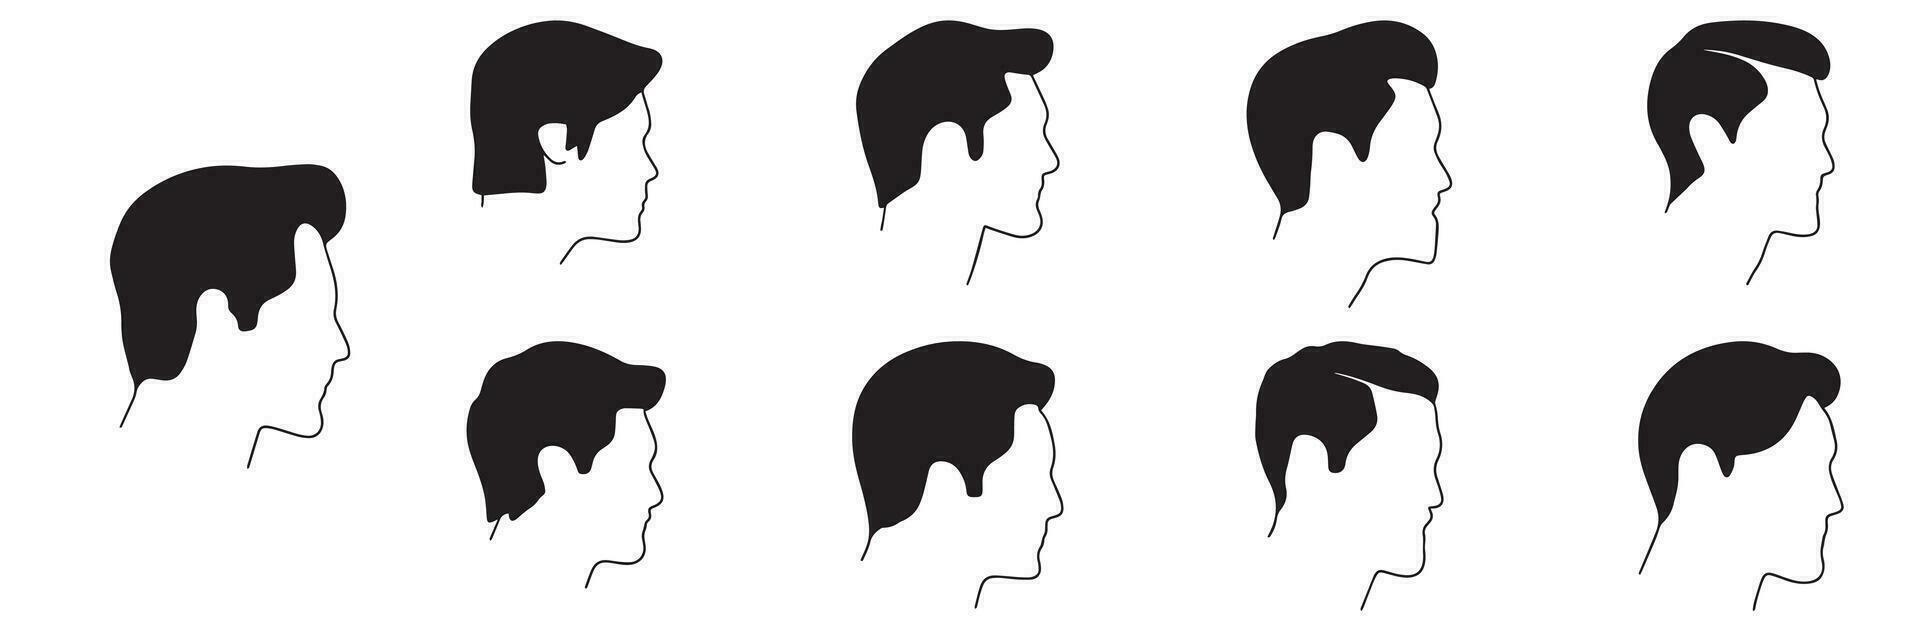 reeks van profiel Mens silhouet. hand- getrokken Mannen profielen voor avatar in tekening stijl. vector illustratie.